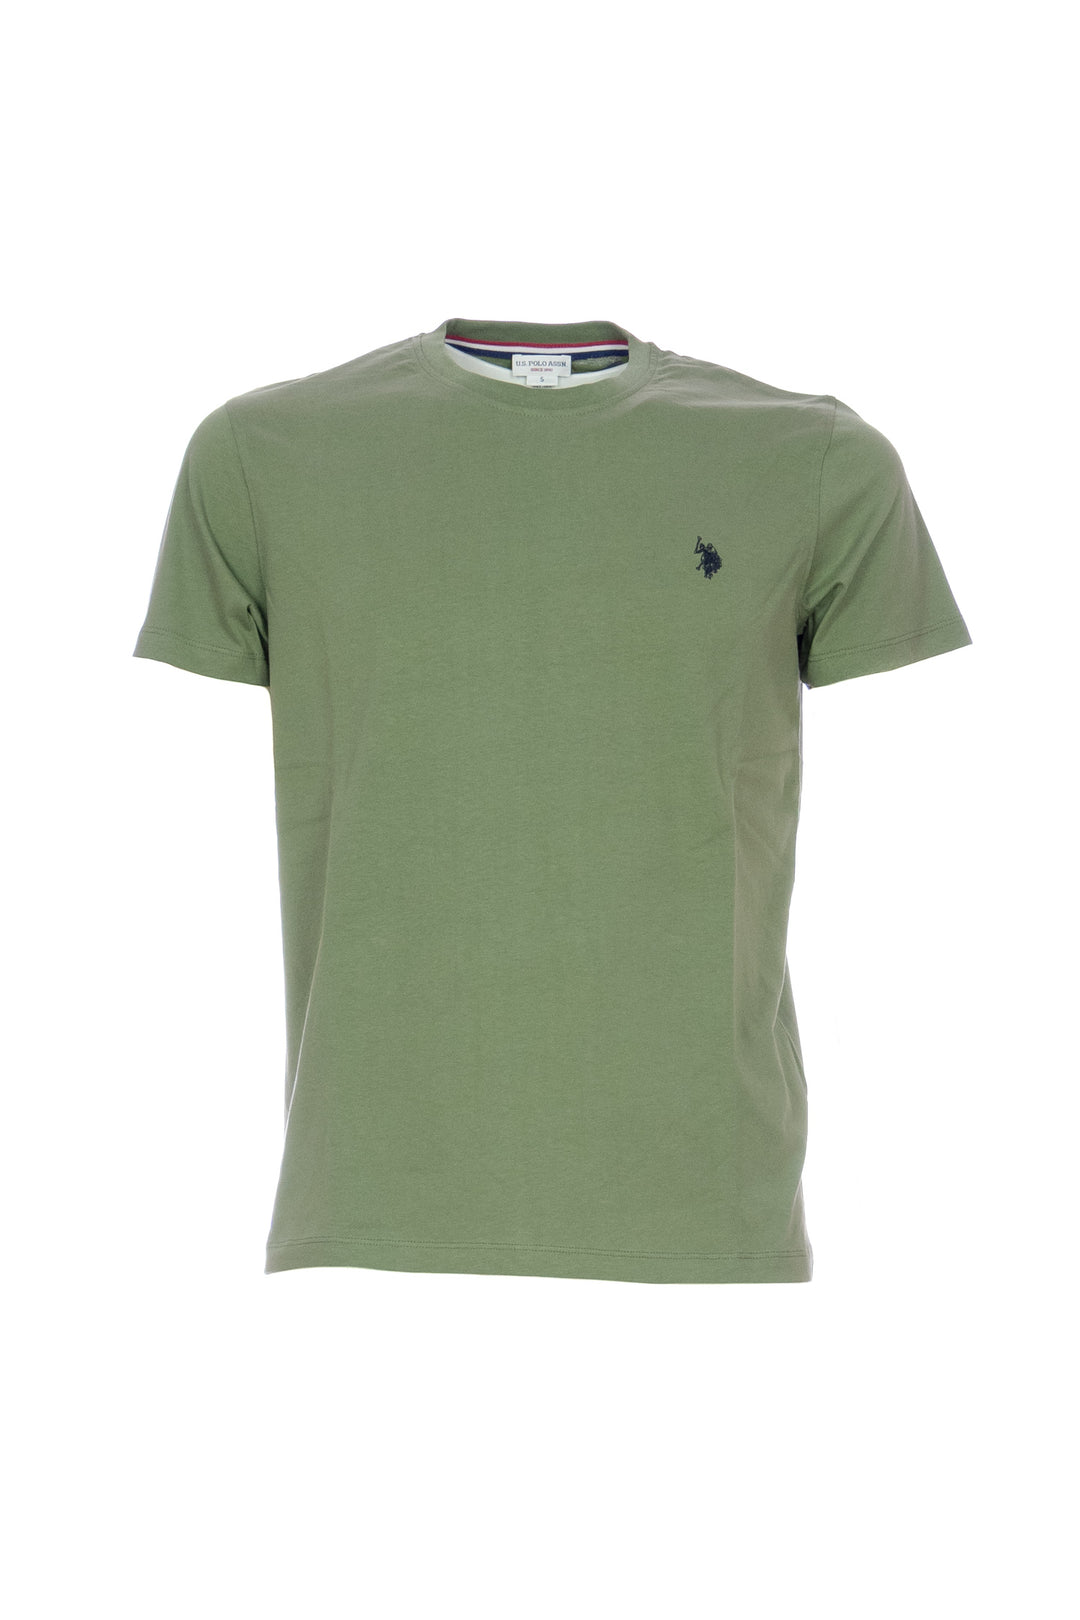 U.S. POLO ASSN. T-shirt verde militare in cotone con logo ricamato sul petto - Mancinelli 1954